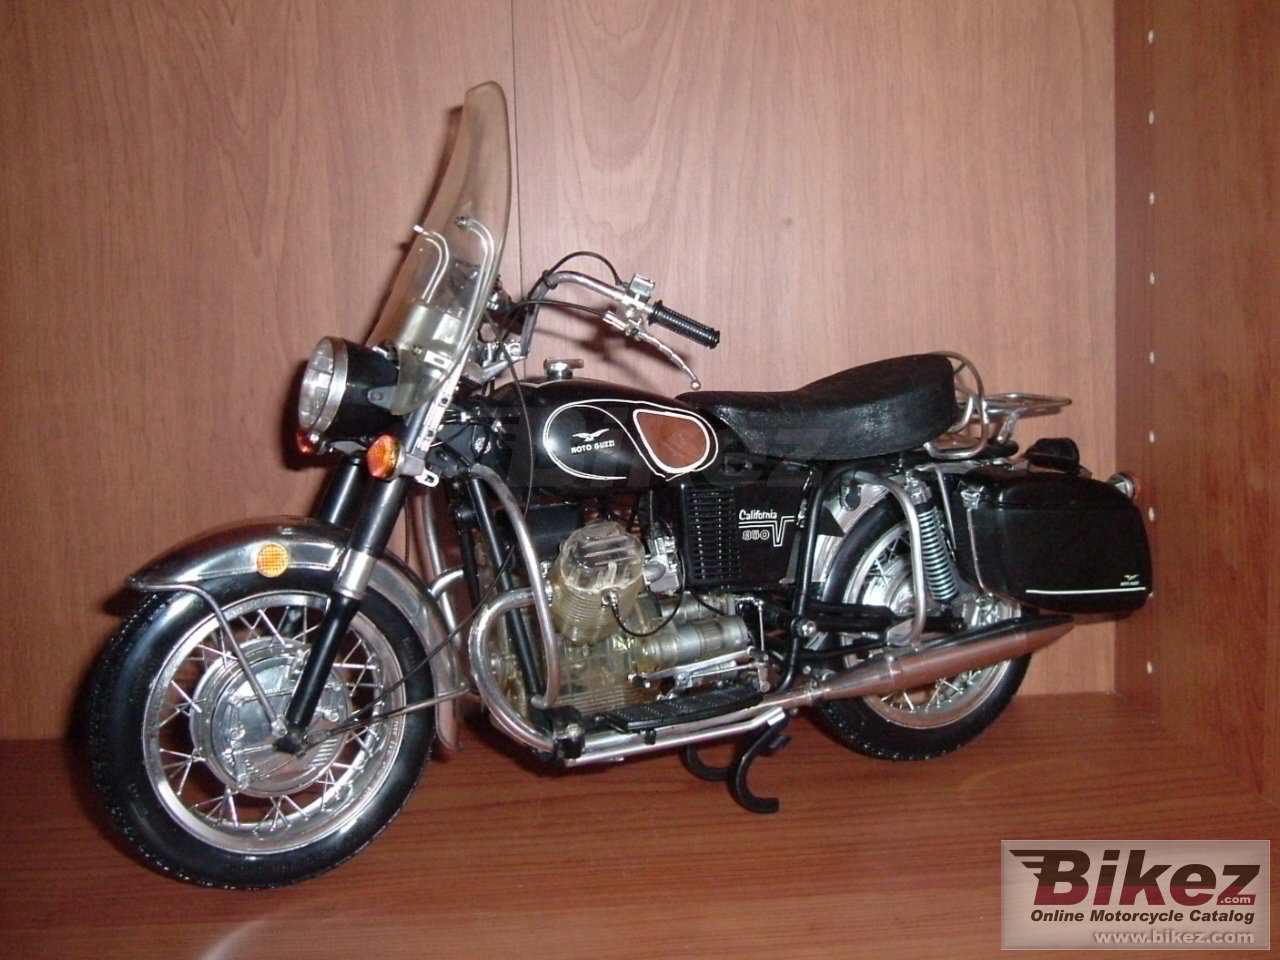 Moto Guzzi V 7 850 California